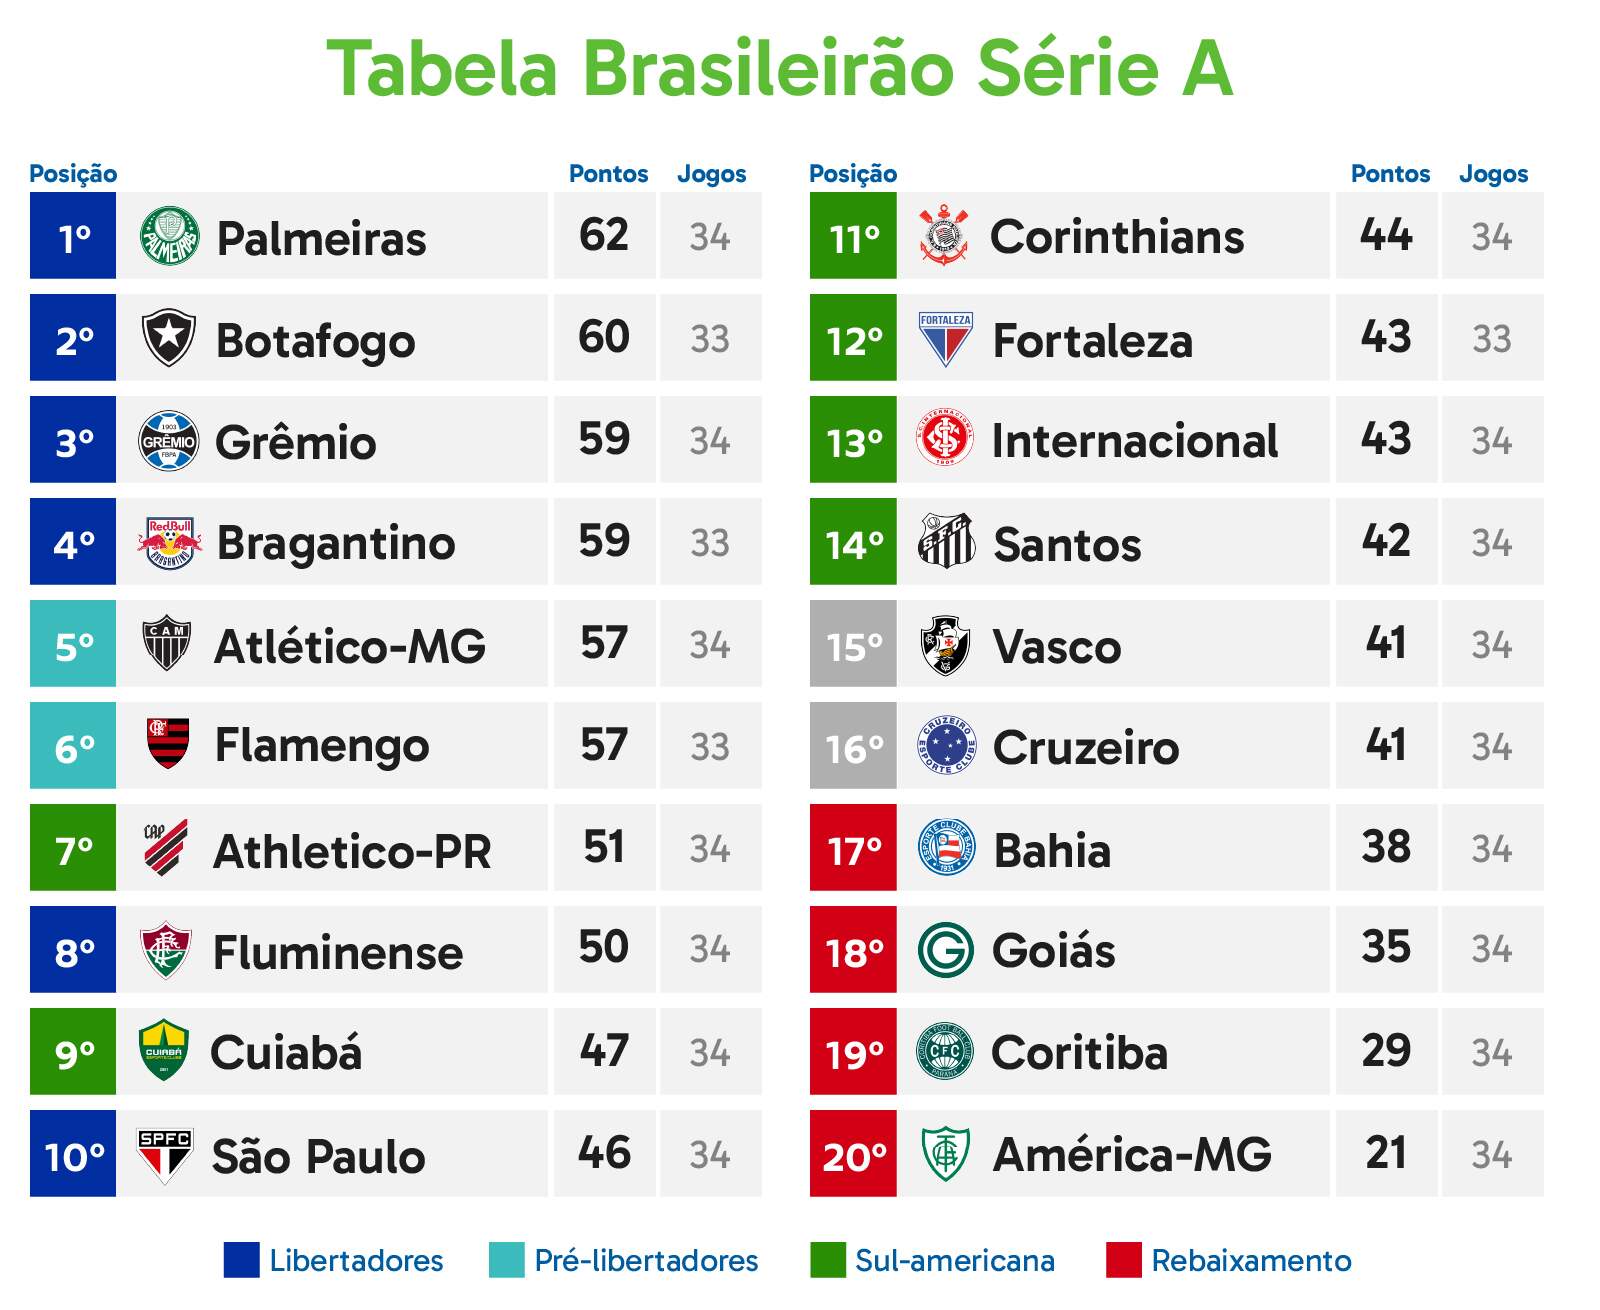 Brasileirão: como foram os últimos jogos entre Flamengo e Santos?